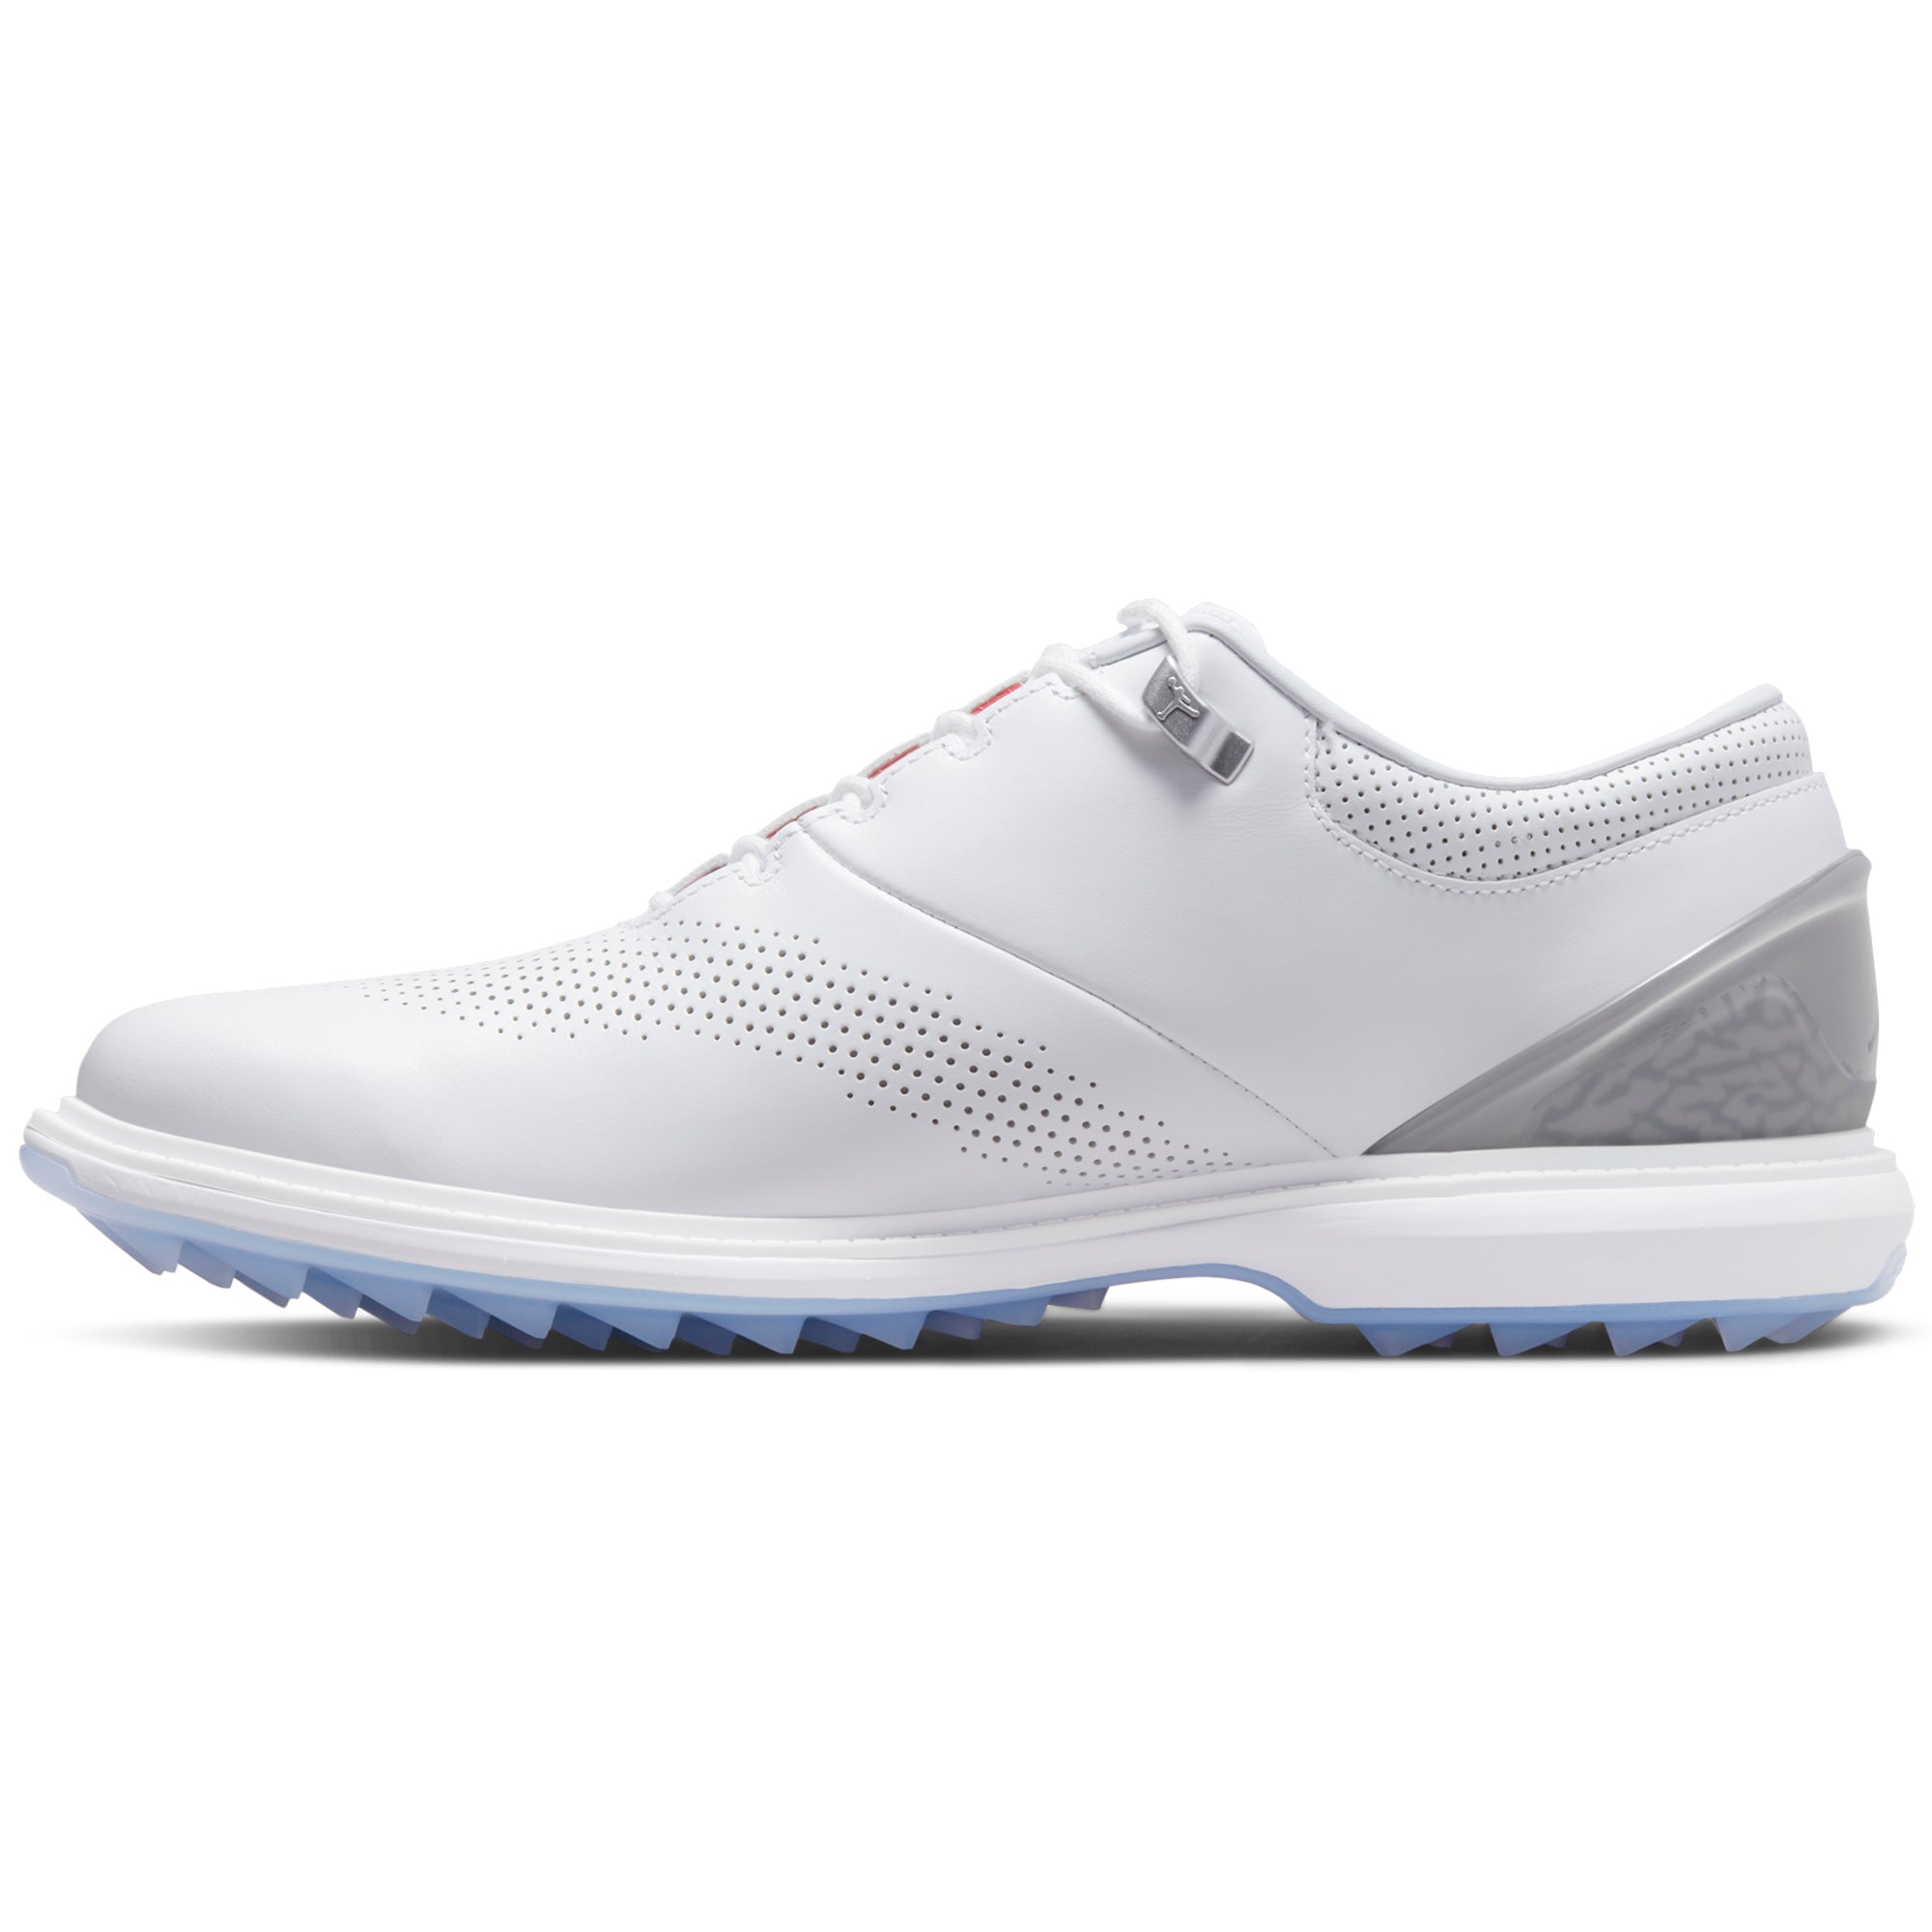 Nike Golf Air Jordan ADG 4 Shoes DM0103 White Black Pure Platinum 105